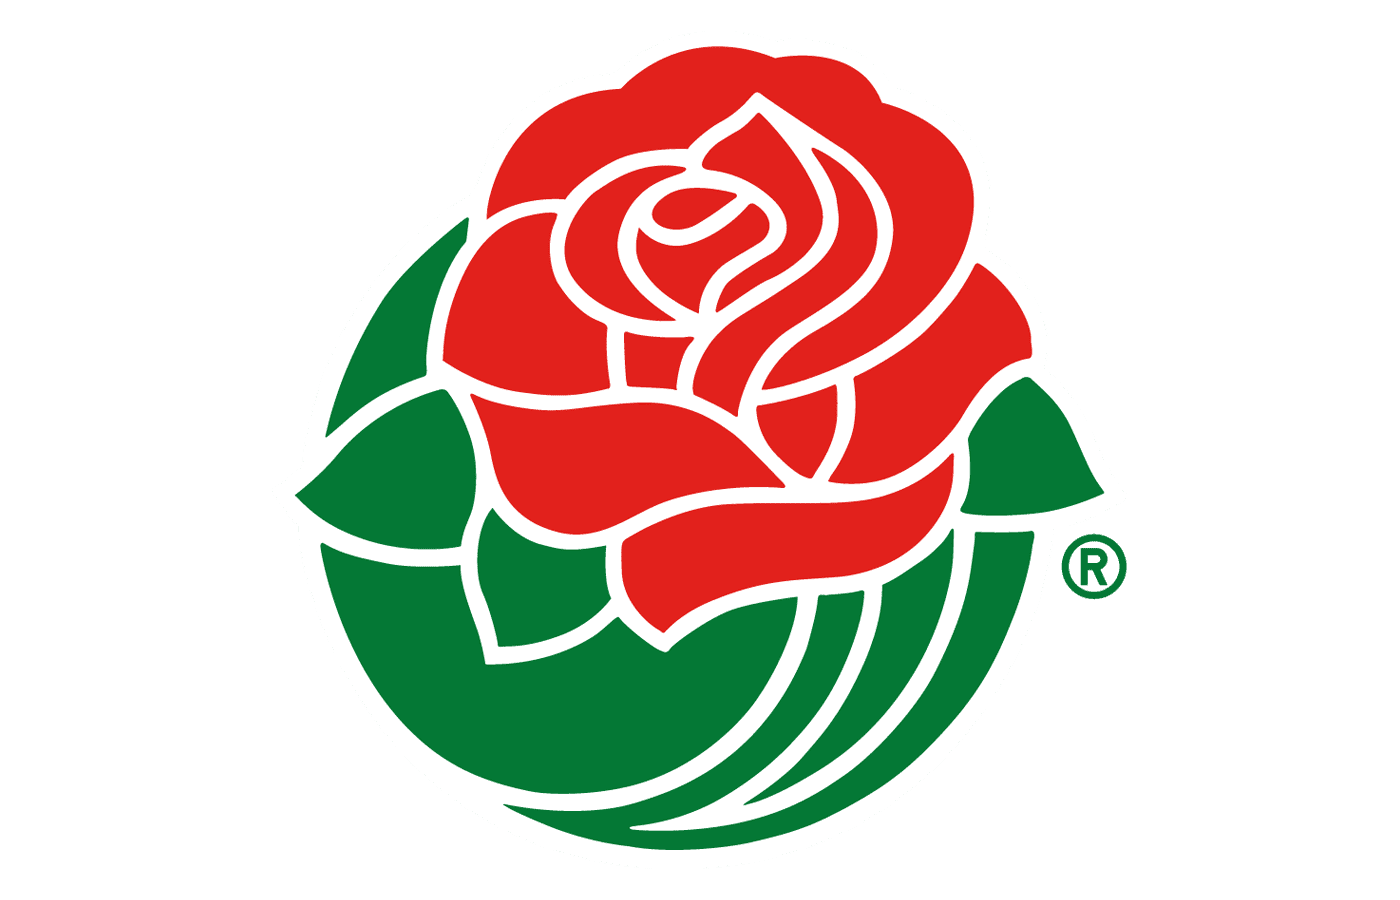 Rose Bowl Logo 2022 Png